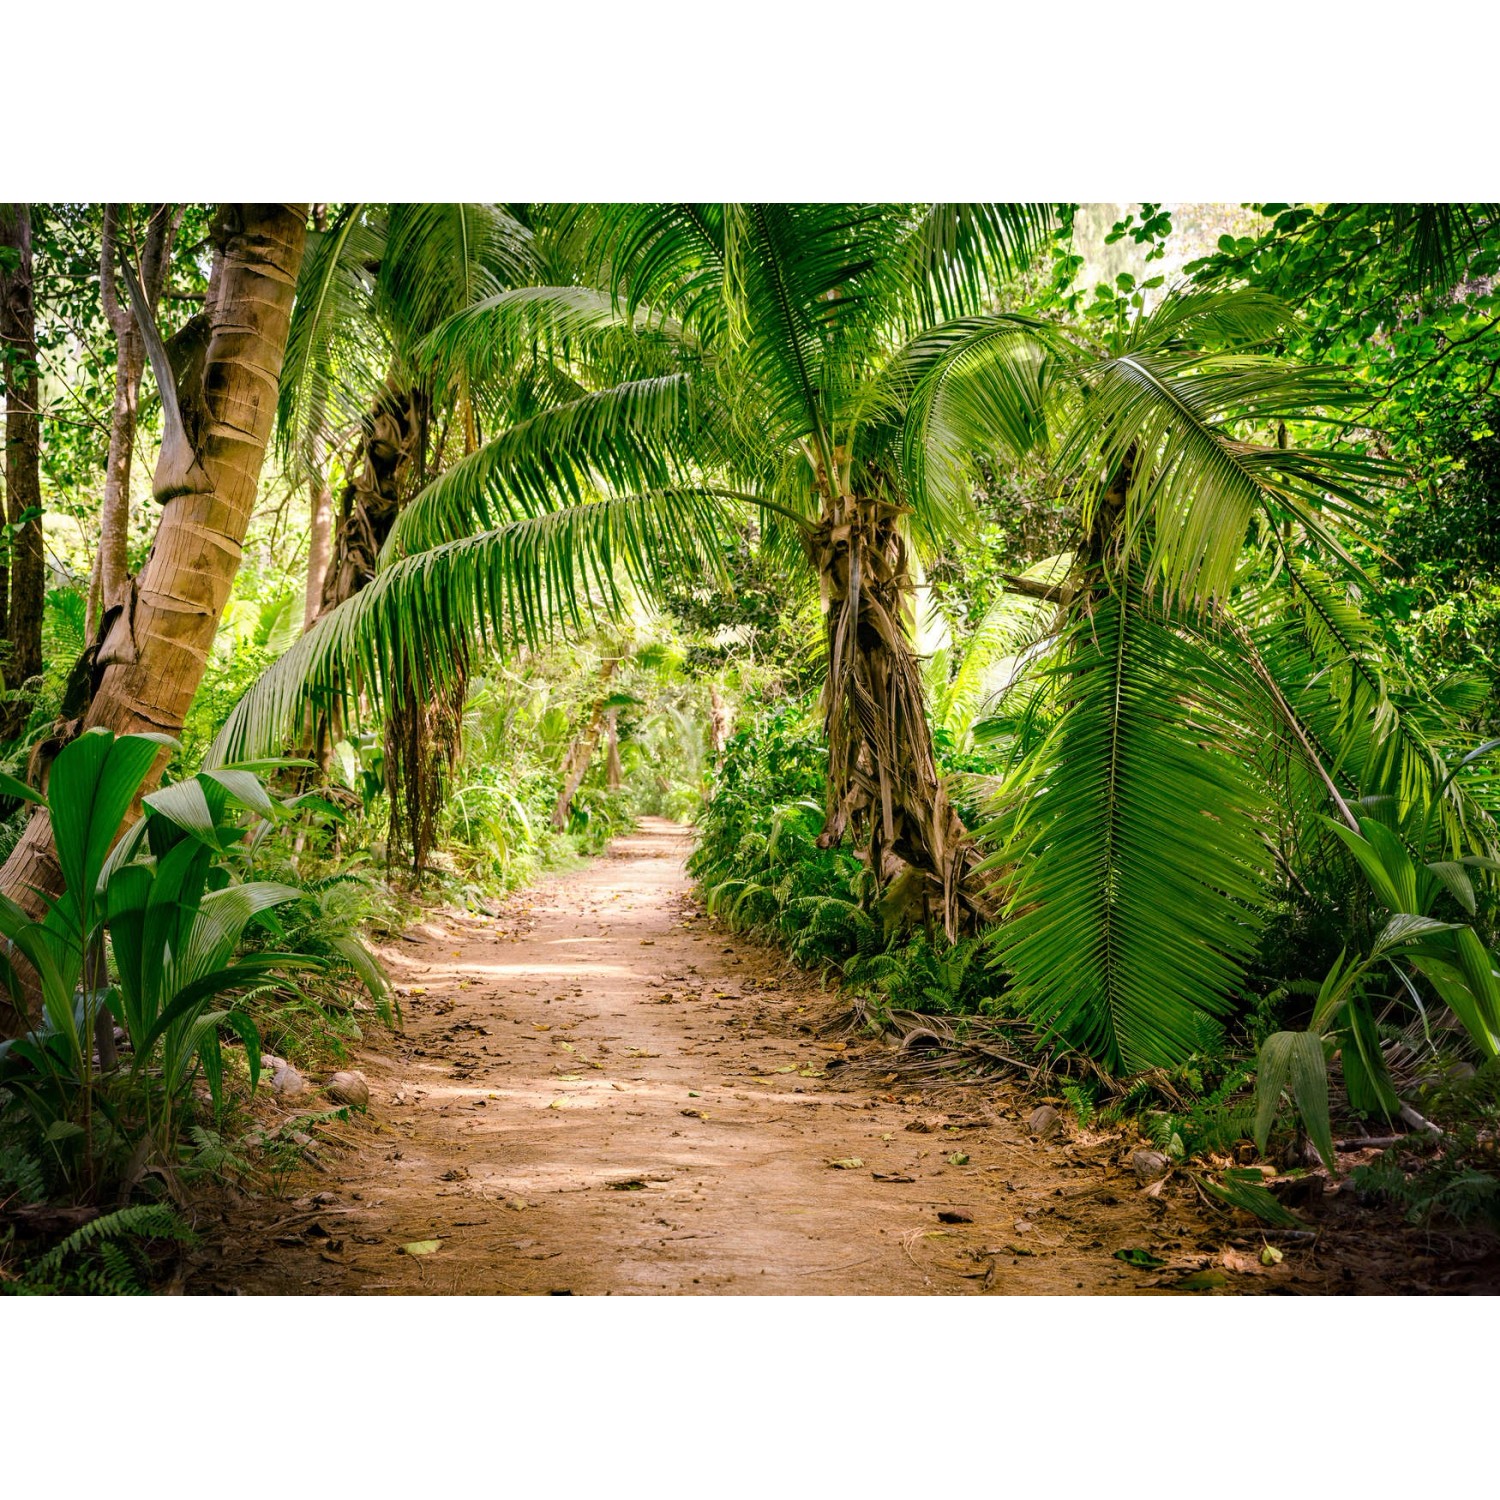 Fototapete Palmen Dschungel Grün Braun 3,50 m x 2,55 m FSC® von -